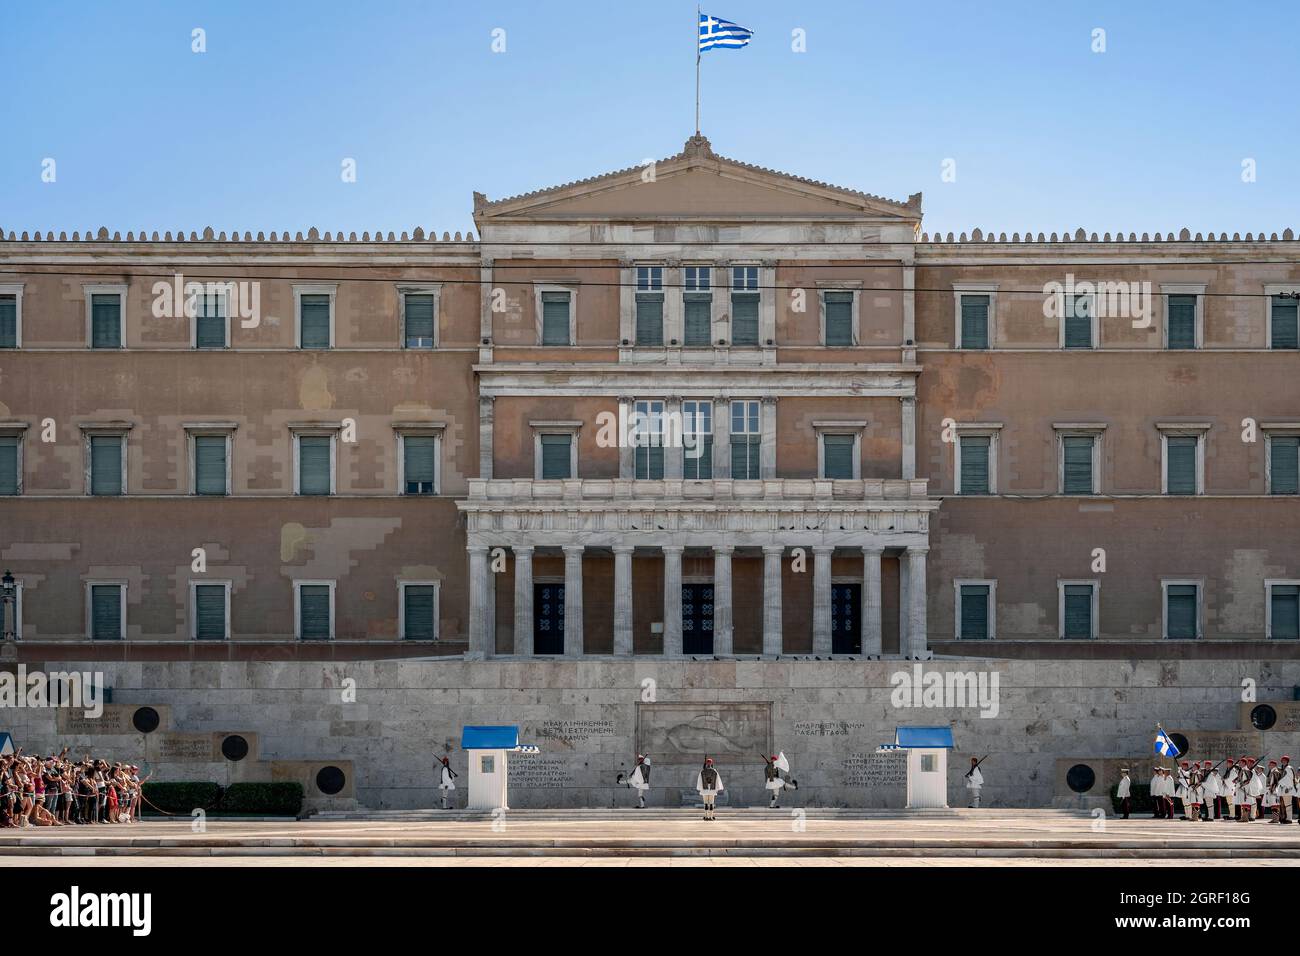 Il cambiamento cerimoniale della Guardia Presidenziale greca che si svolge la domenica presso il monumento commemorativo Unkown Soldier Tomb di fronte al Parlamento greco Foto Stock